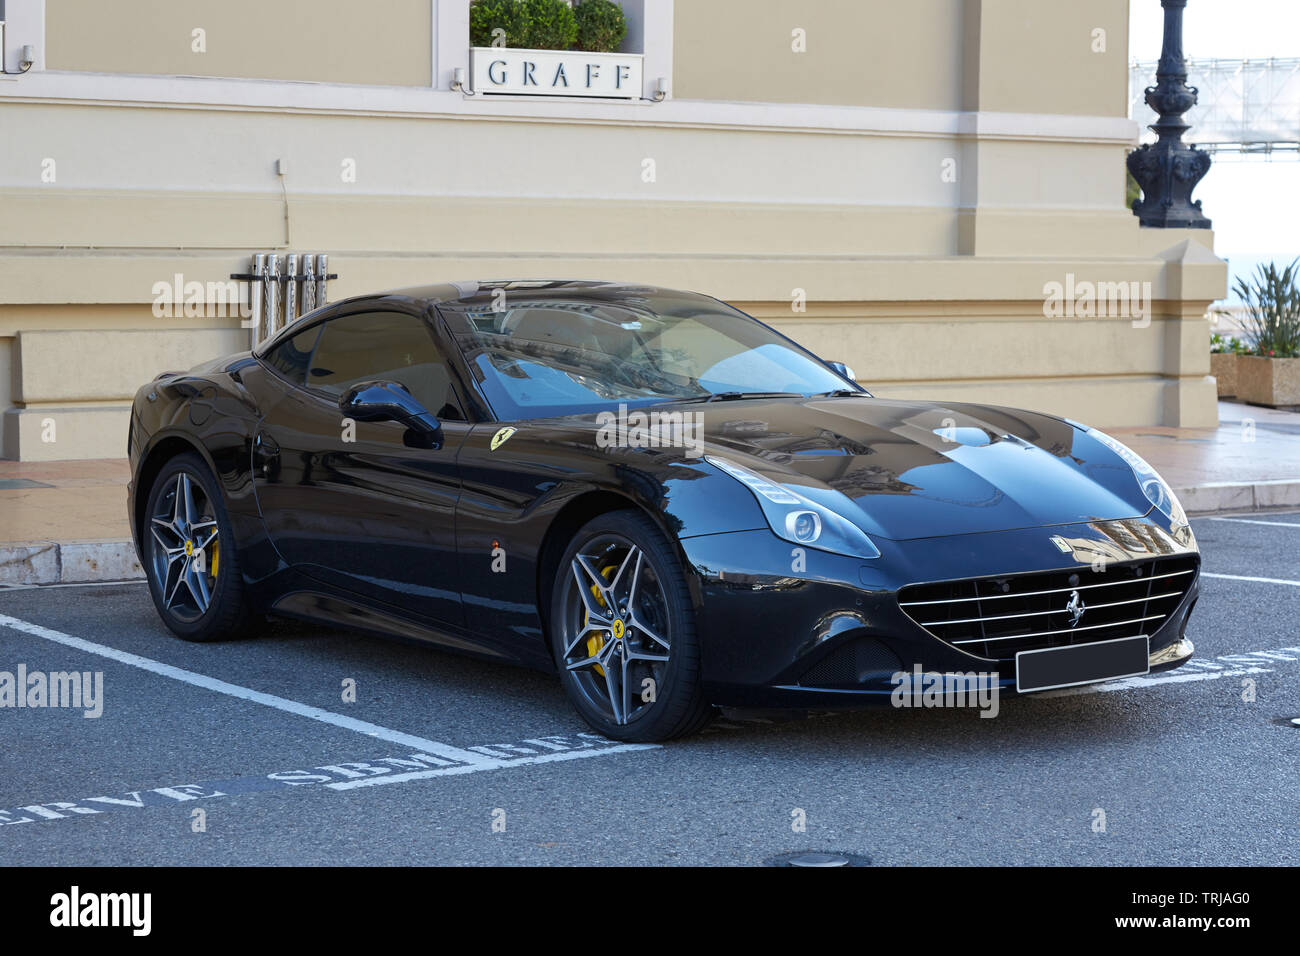 MONTE CARLO, MONACO - AUGUST 21, 2016: Ferrari California black luxury car in a summer day in Monte Carlo, Monaco. Stock Photo